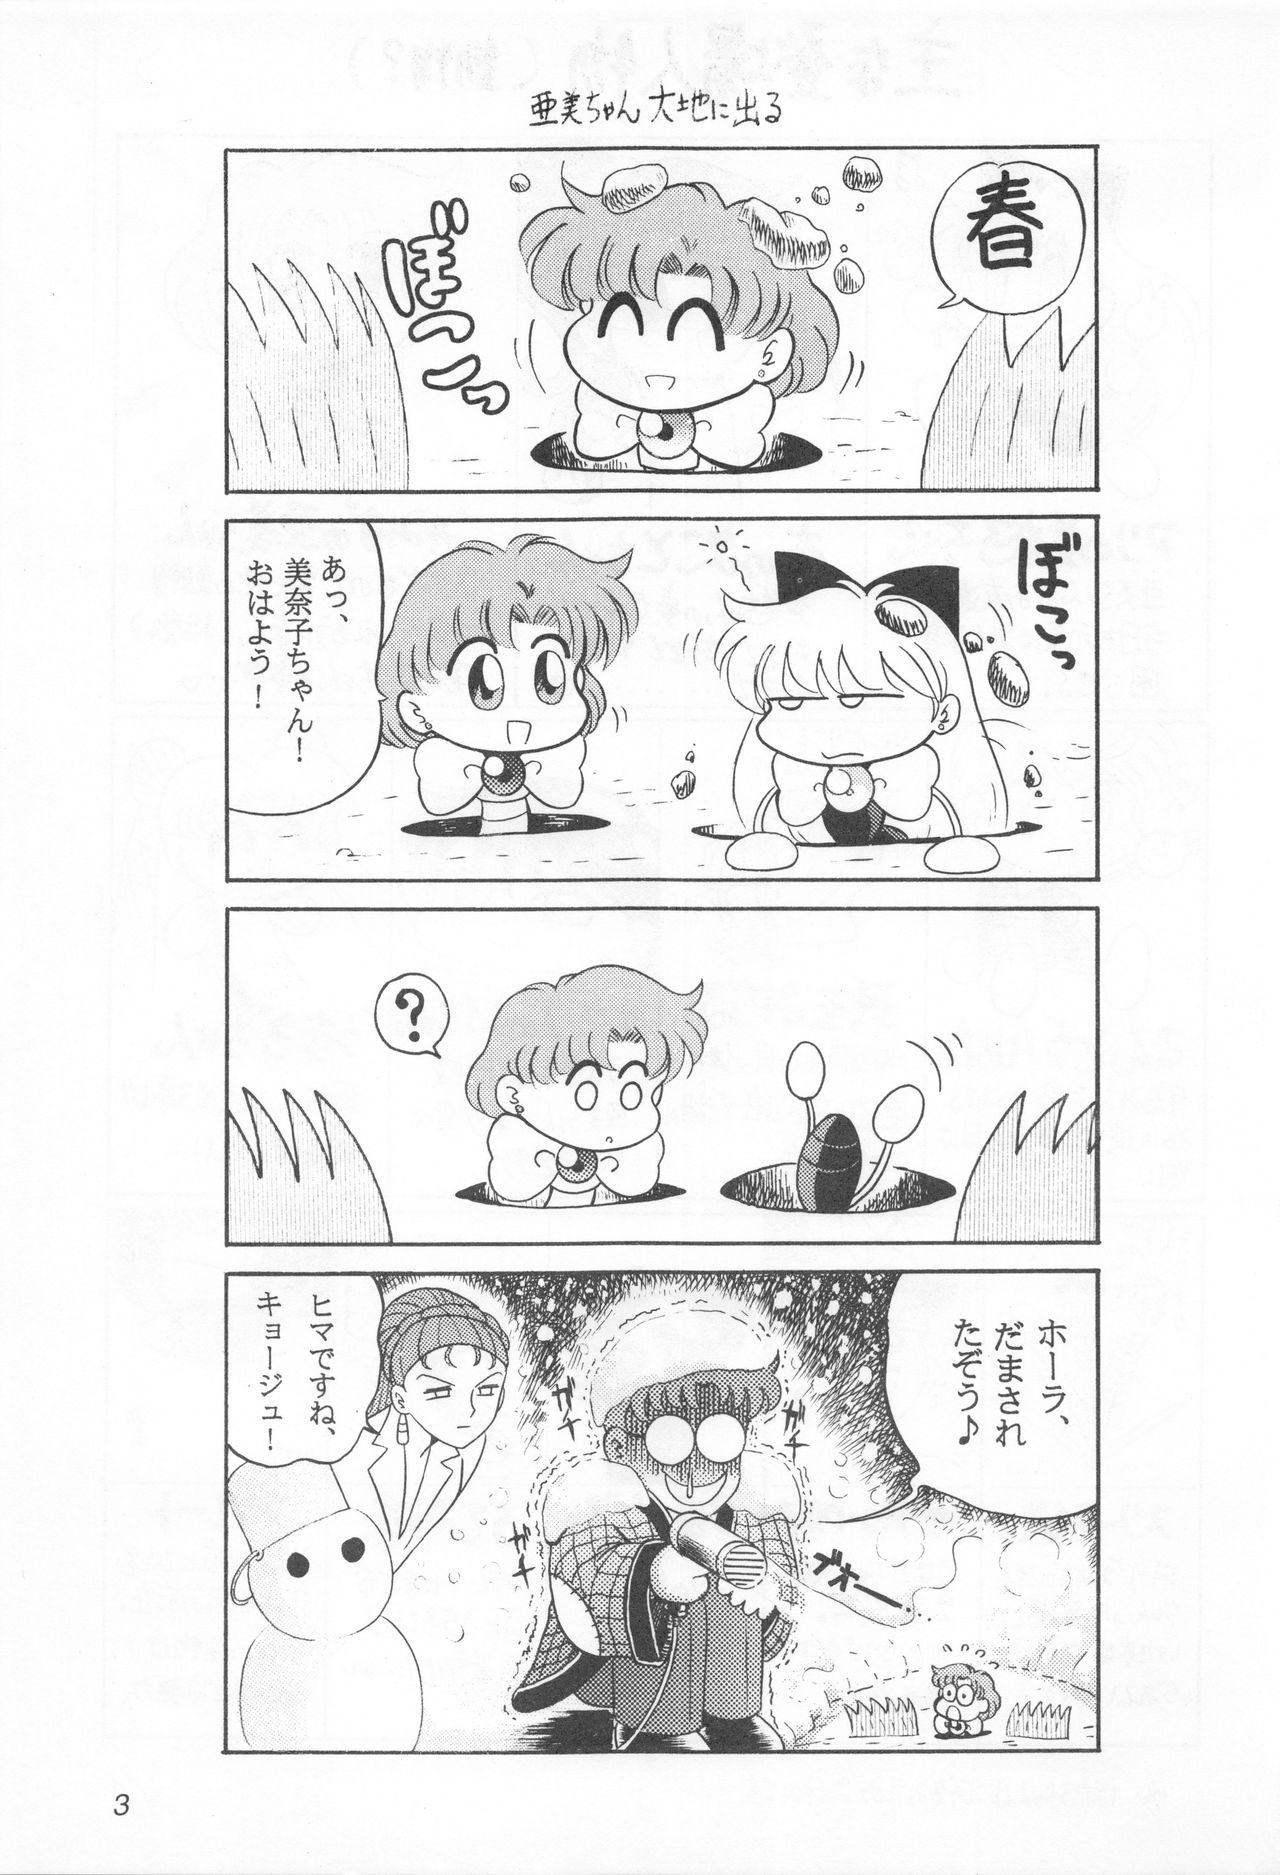 Playing Mimizu no Ami-chan Vol. 2 - Sailor moon Str8 - Page 2